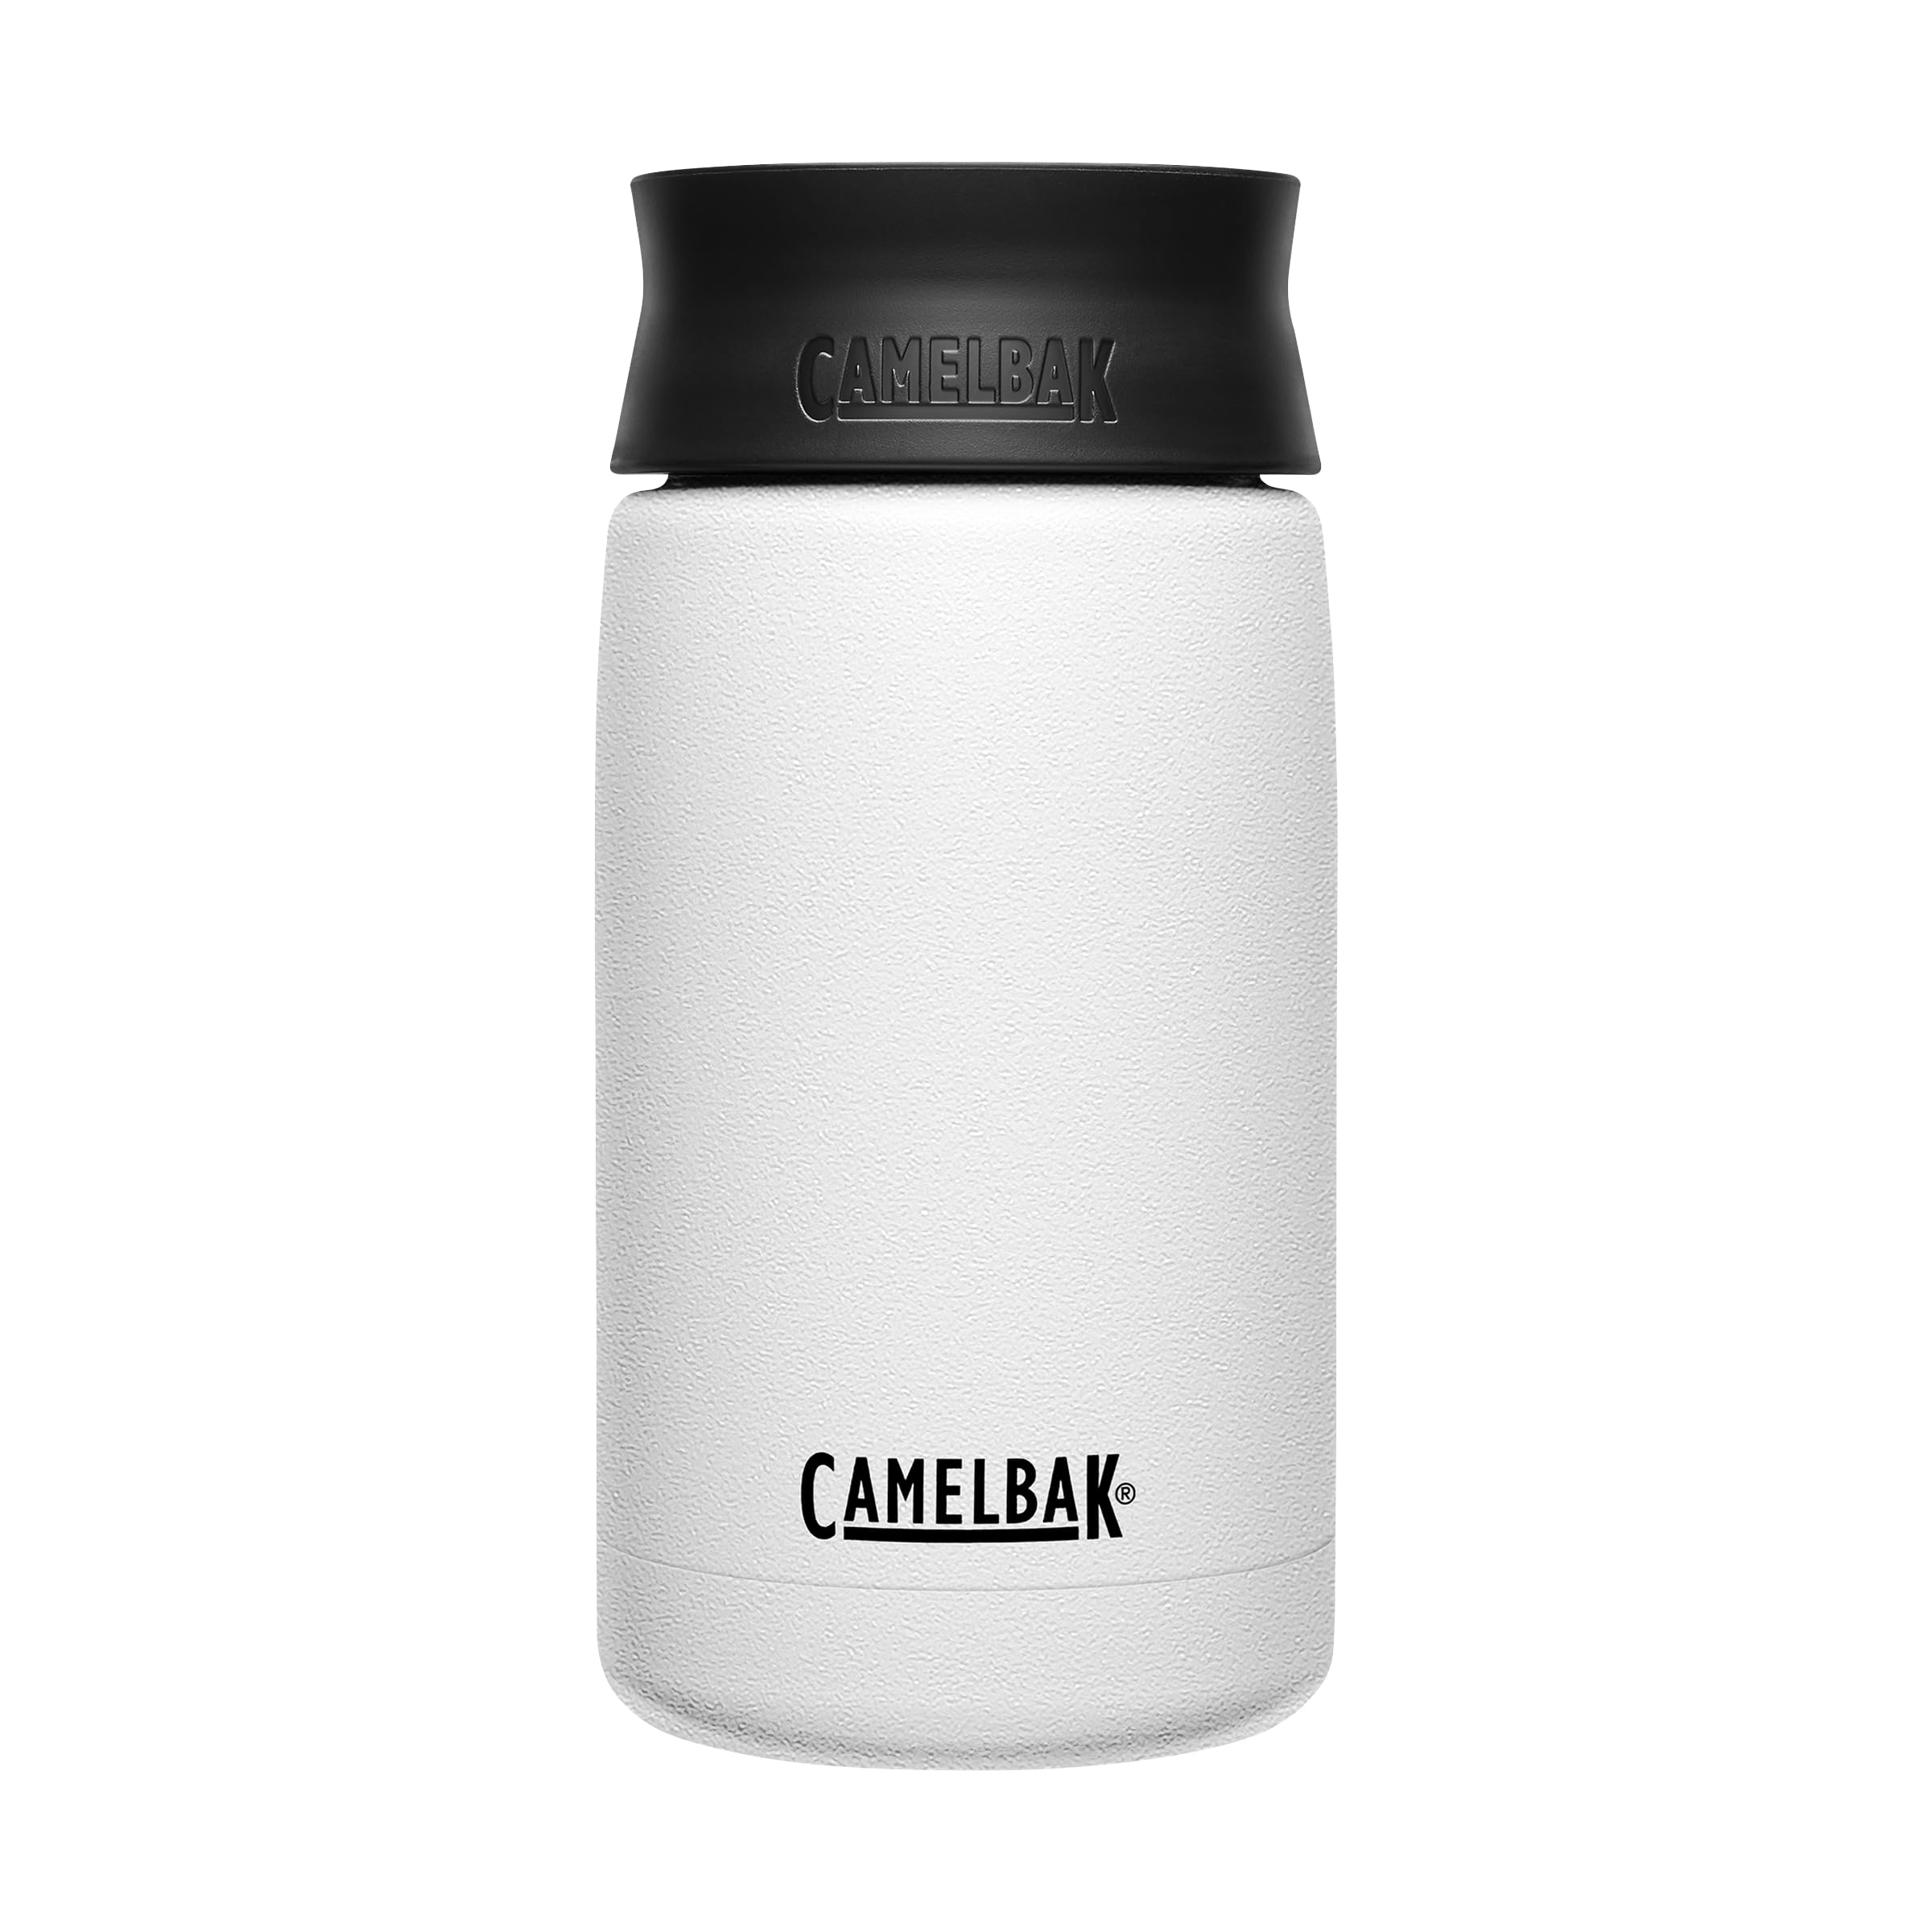 Camelbak Hot Cap Vakuumisolierte Edelstahlflasche mit Hot Cap Weiß